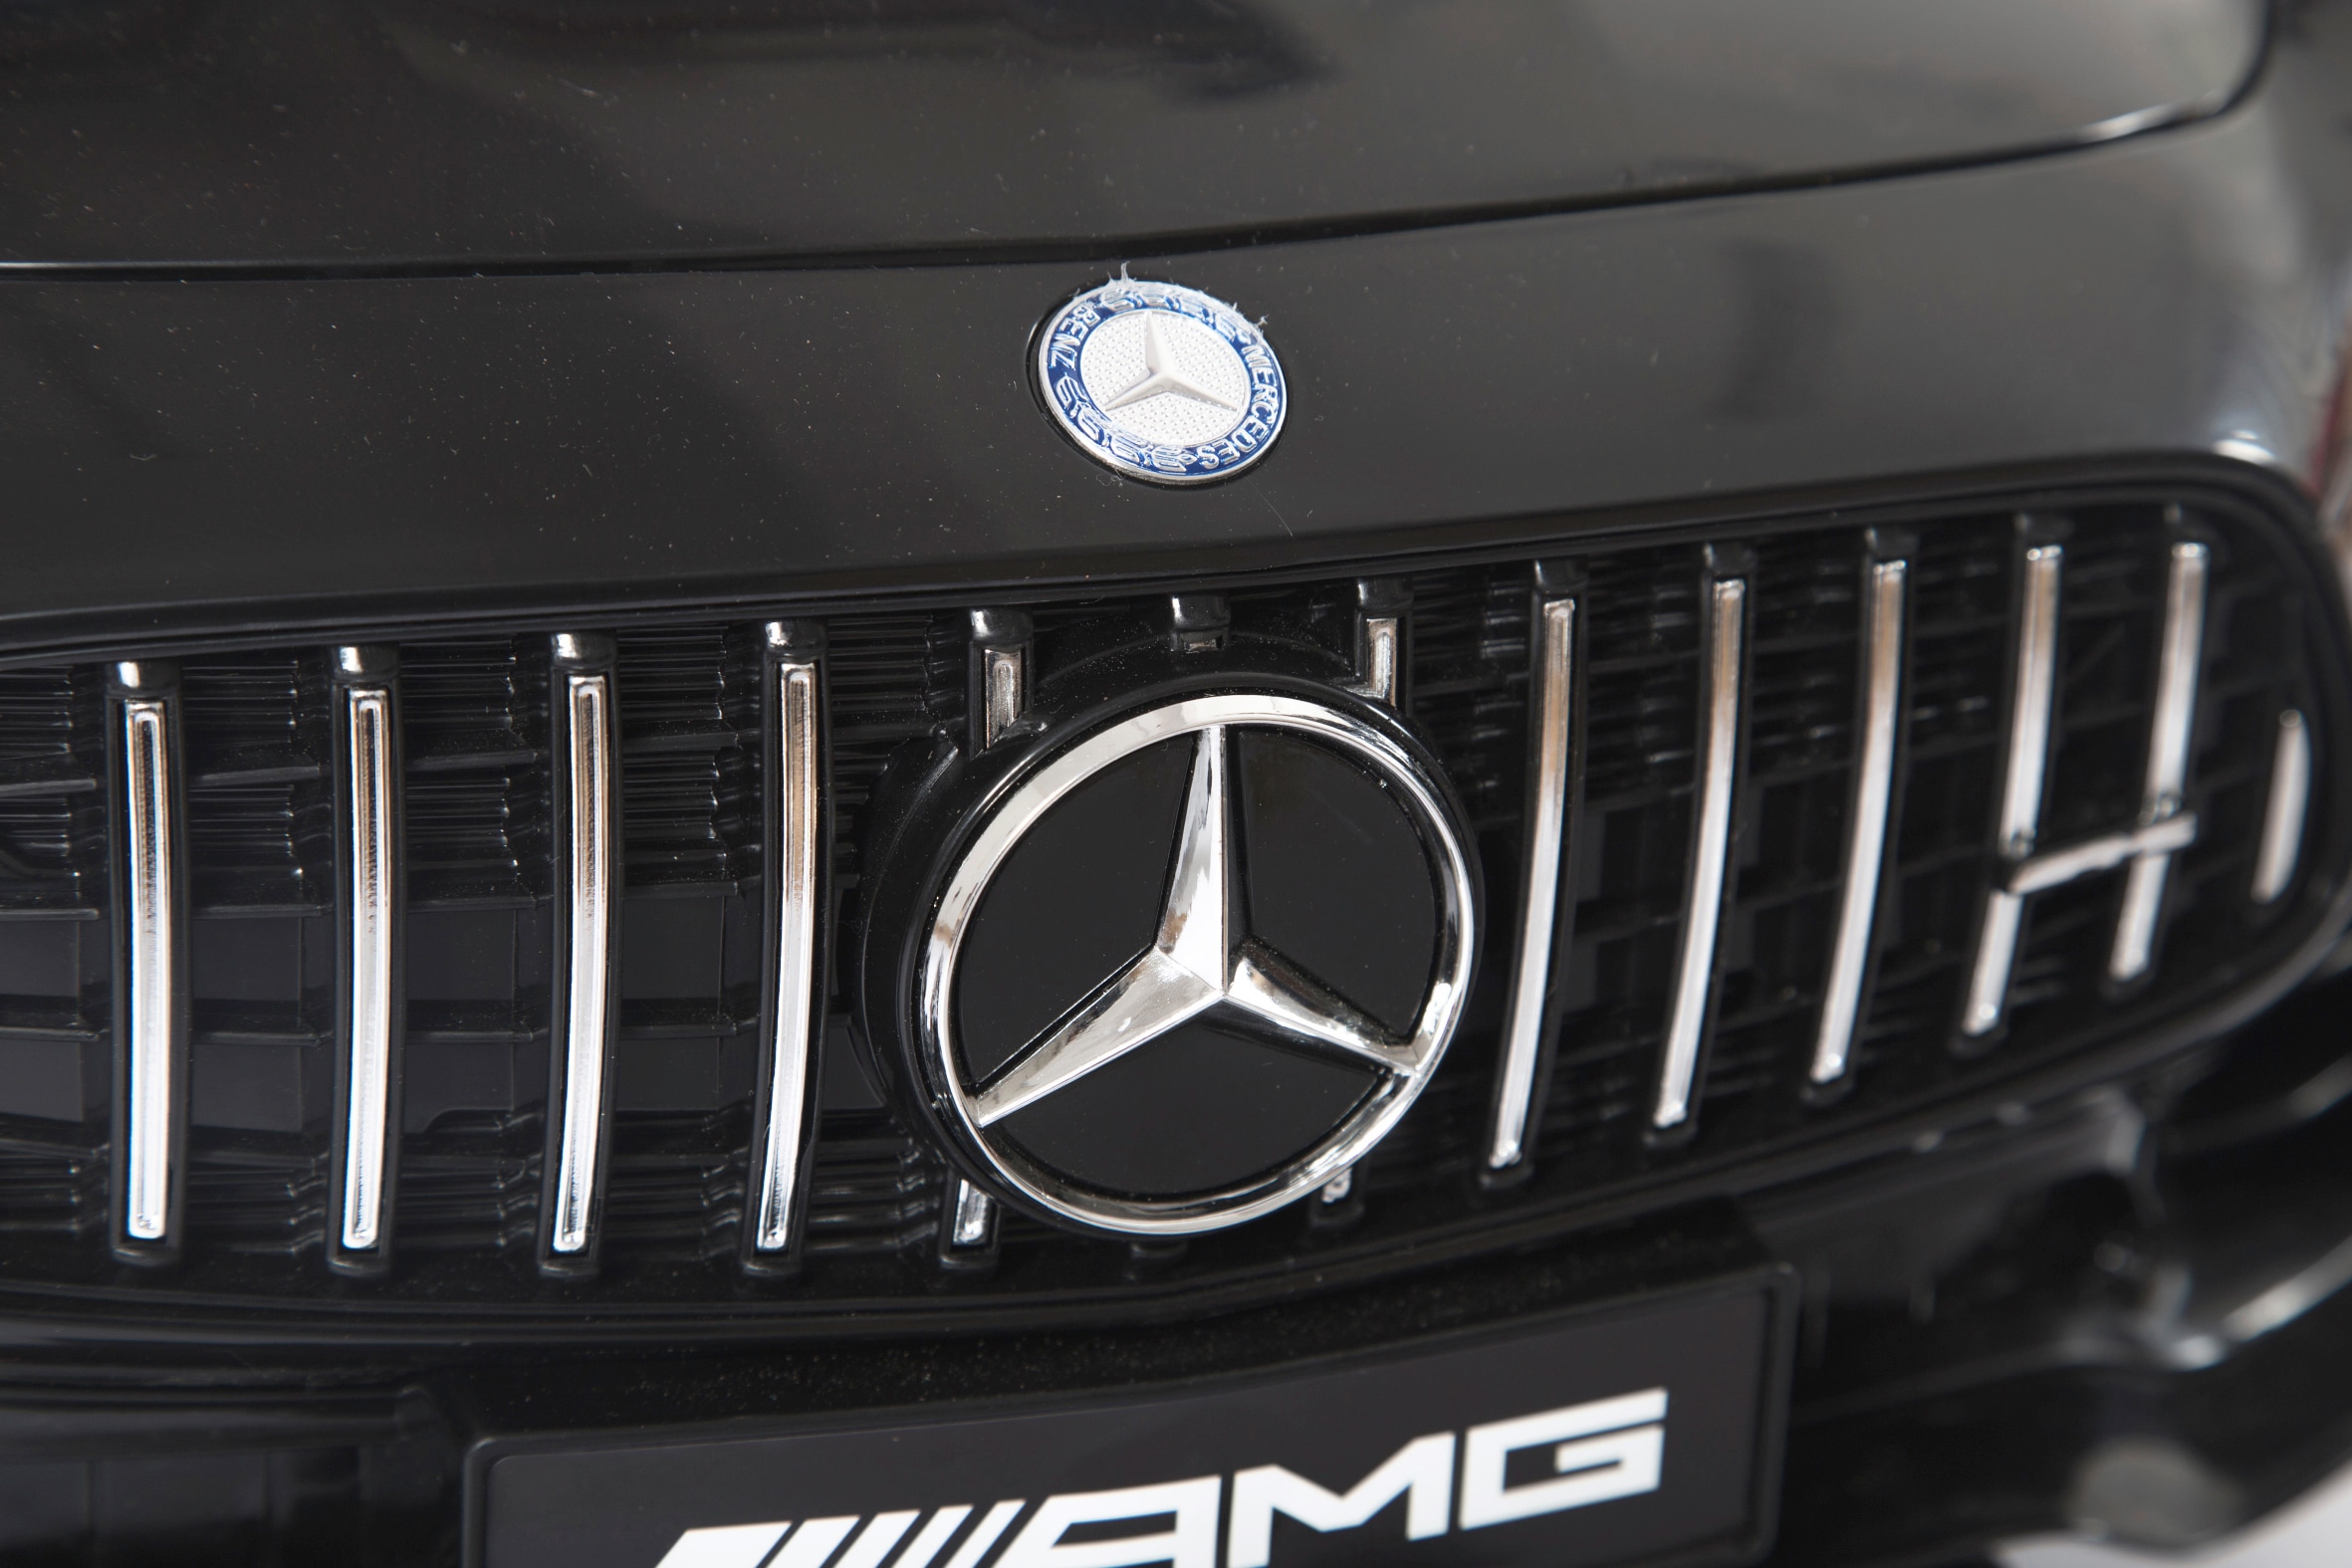 Jamara Elektro-Kinderauto »Ride-on Mercedes-Benz AMG GT R«, ab 3 Jahren, 2,4 GHz 12V